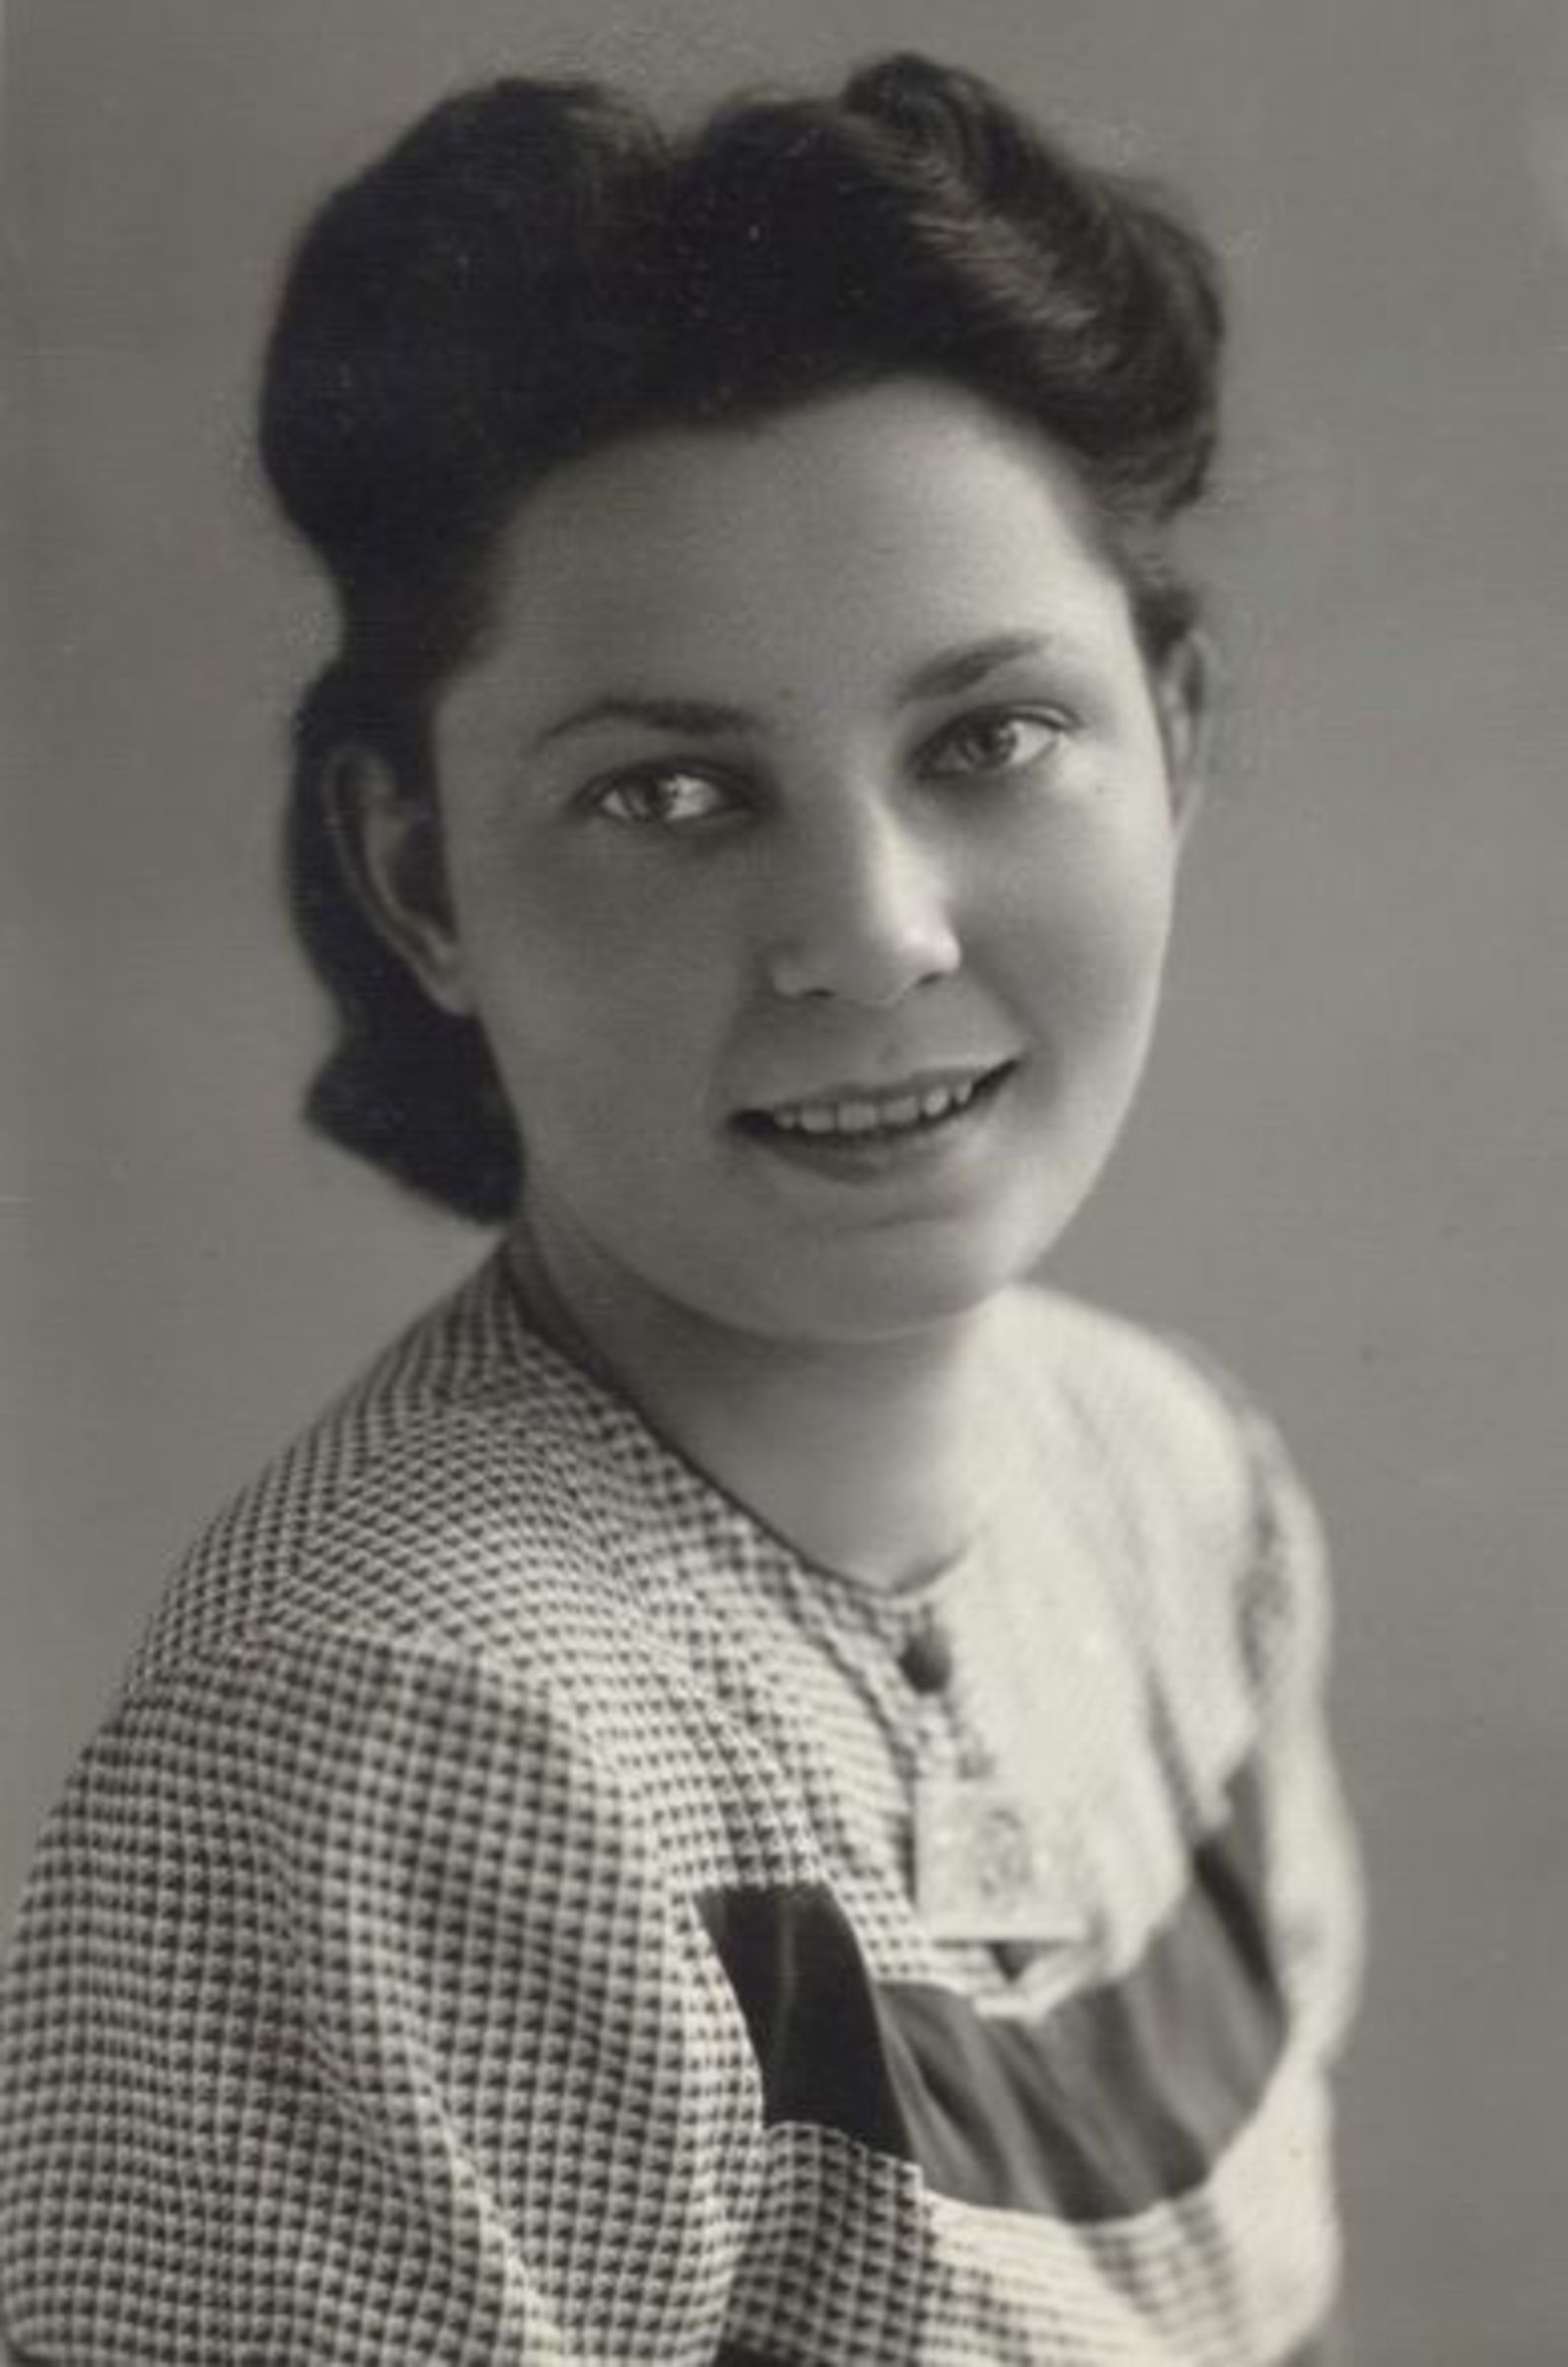 Jiřina Kotalíková as a young woman